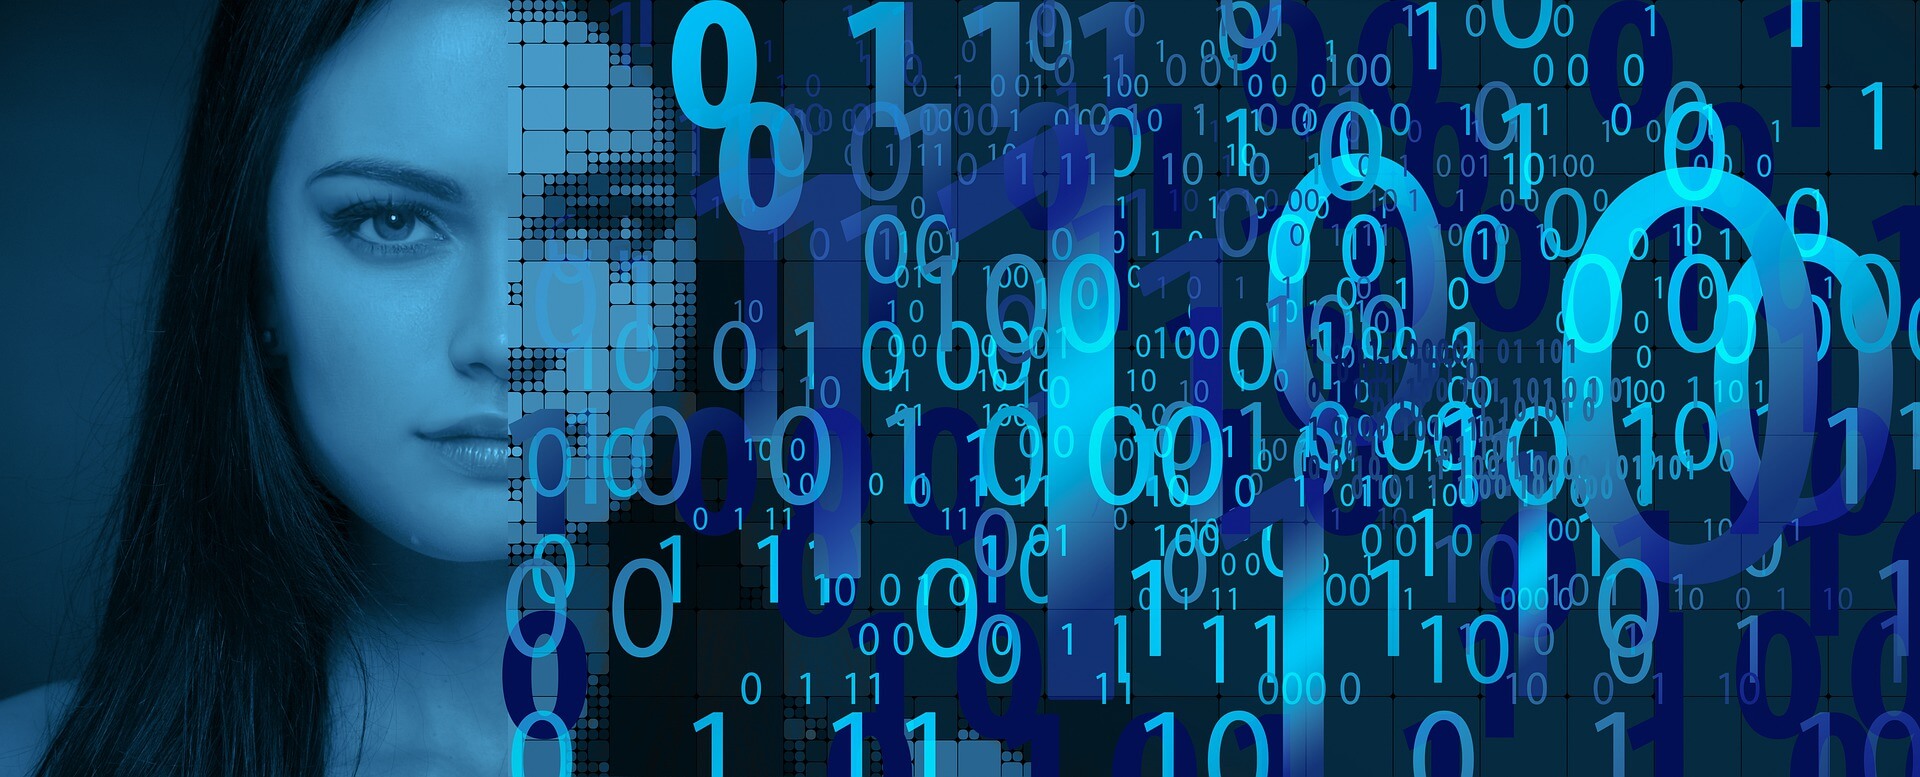 图片展示了一位女性的侧脸，背景是蓝色调的数字和锁形符号，暗示着网络安全或数据保护的主题。